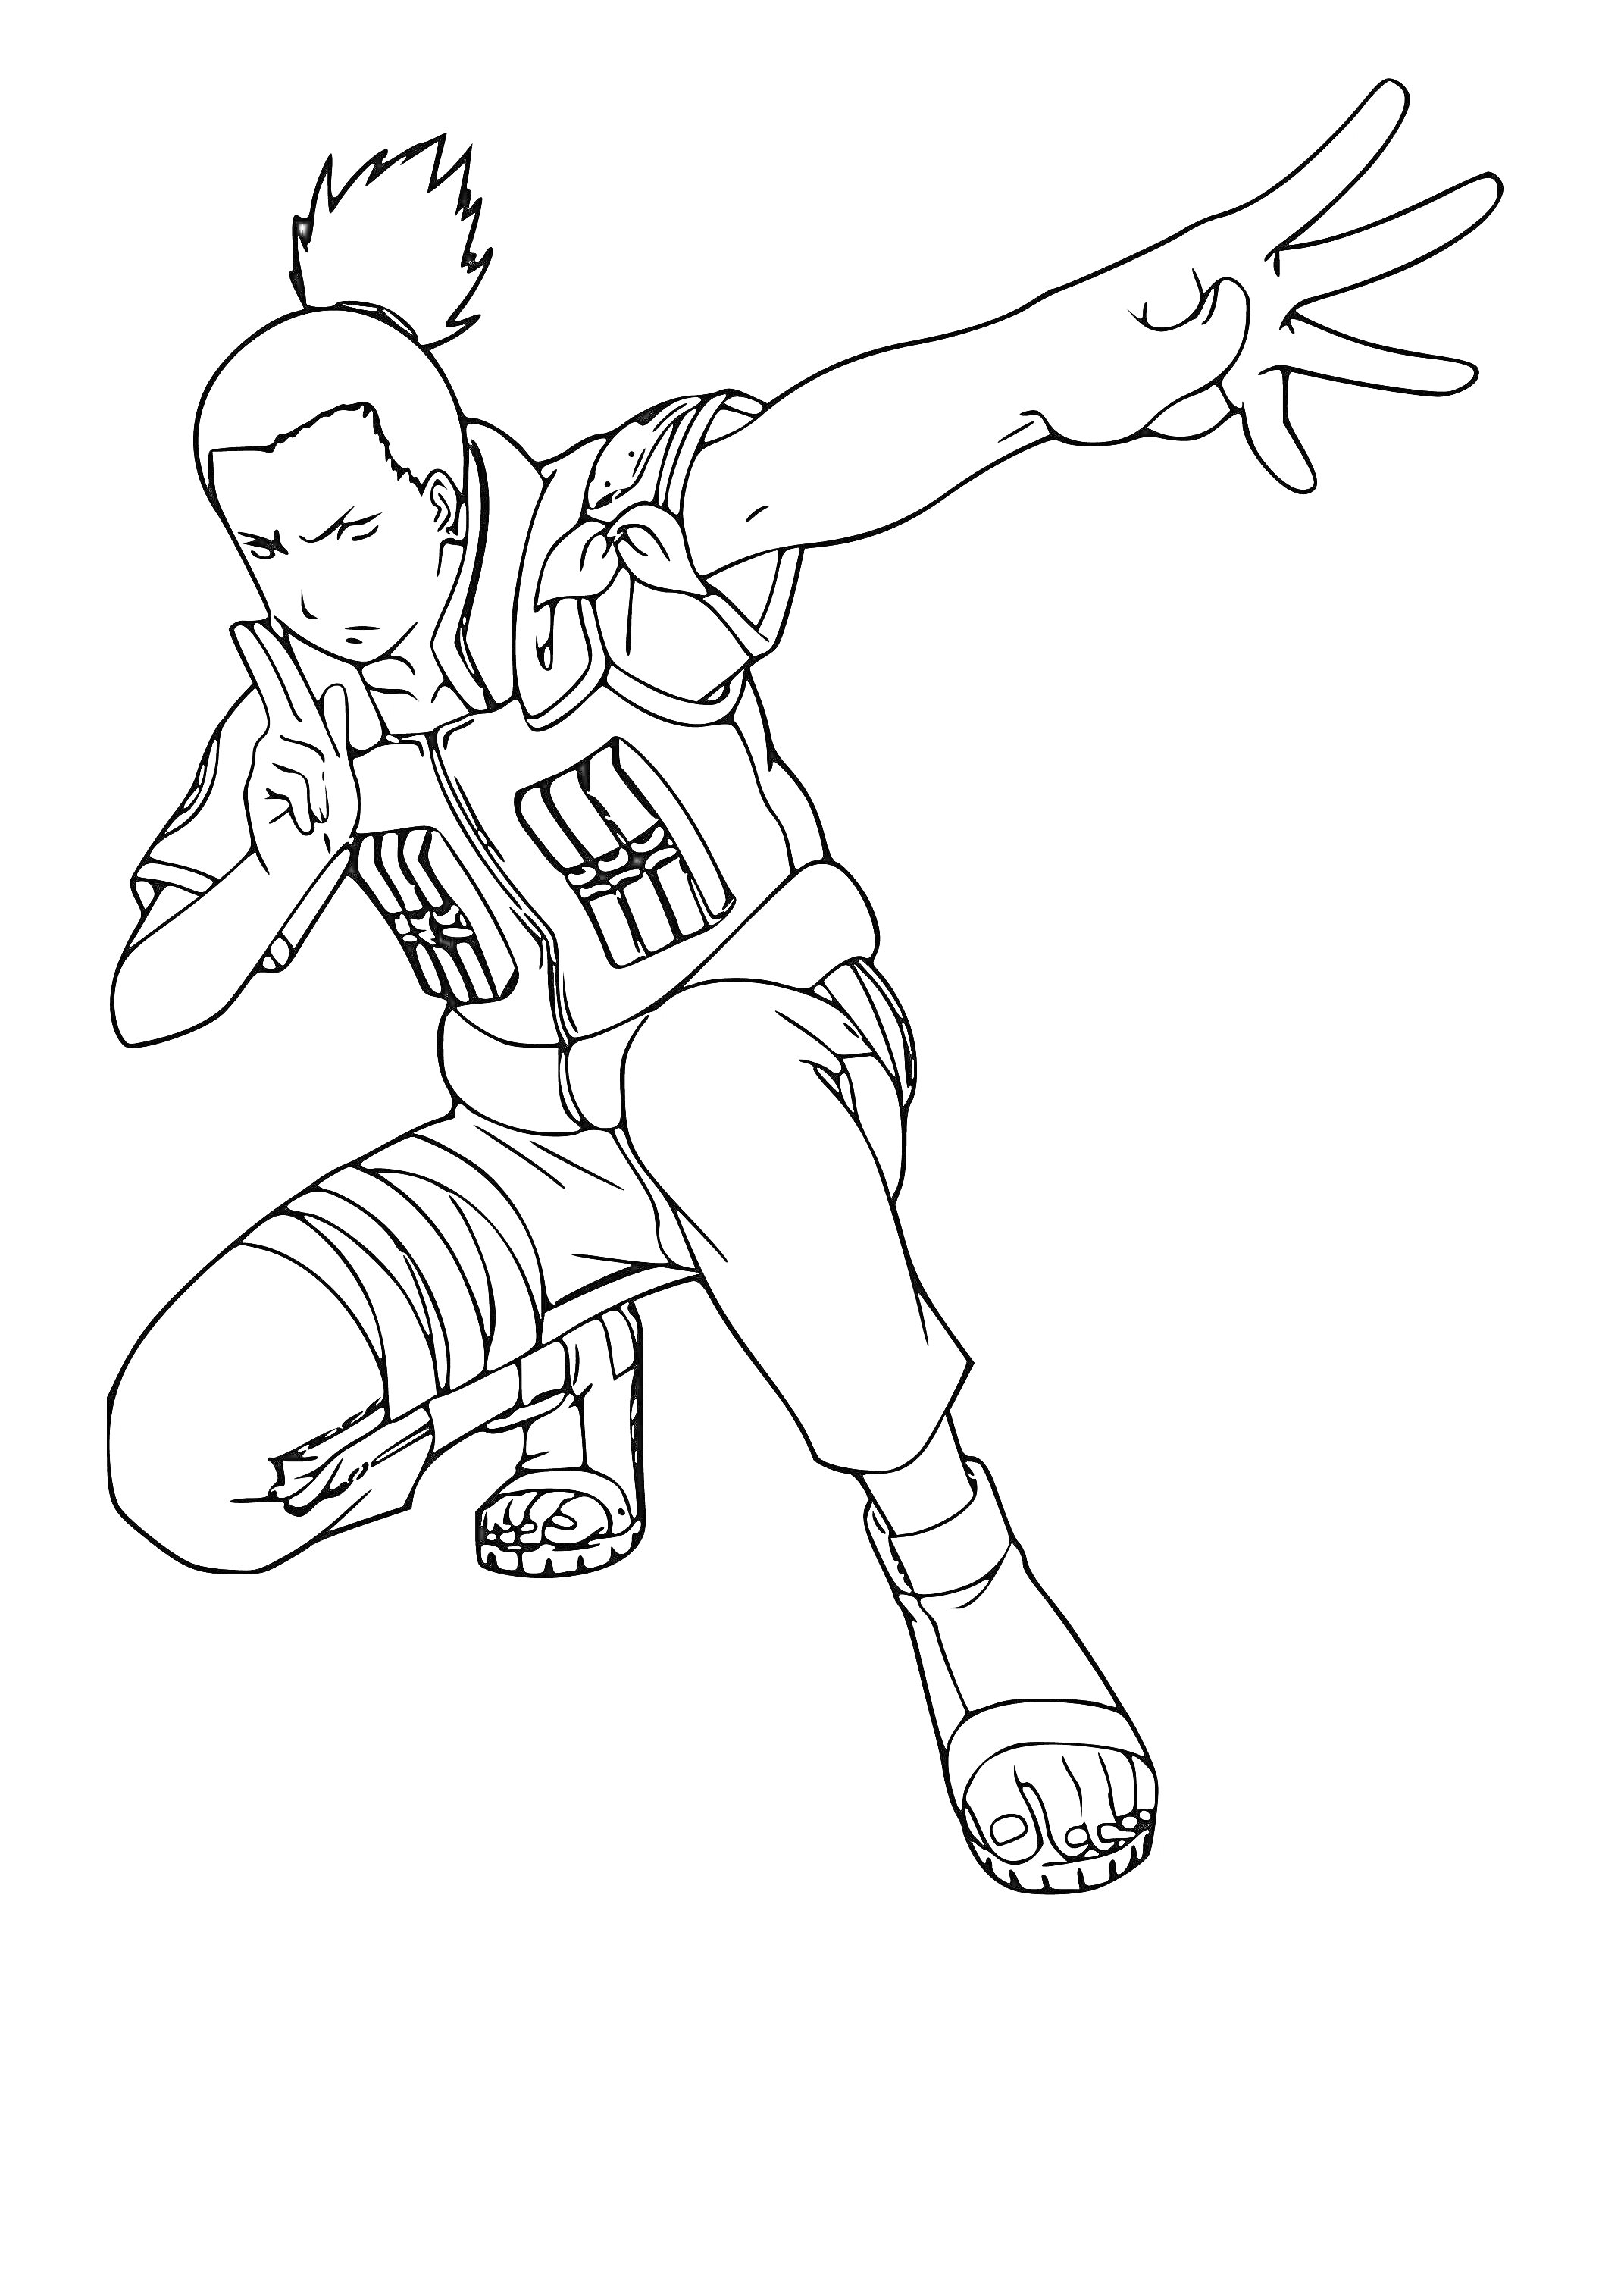 Раскраска Шикамару в боевой стойке с поднятой рукой и снаряжением шиноби